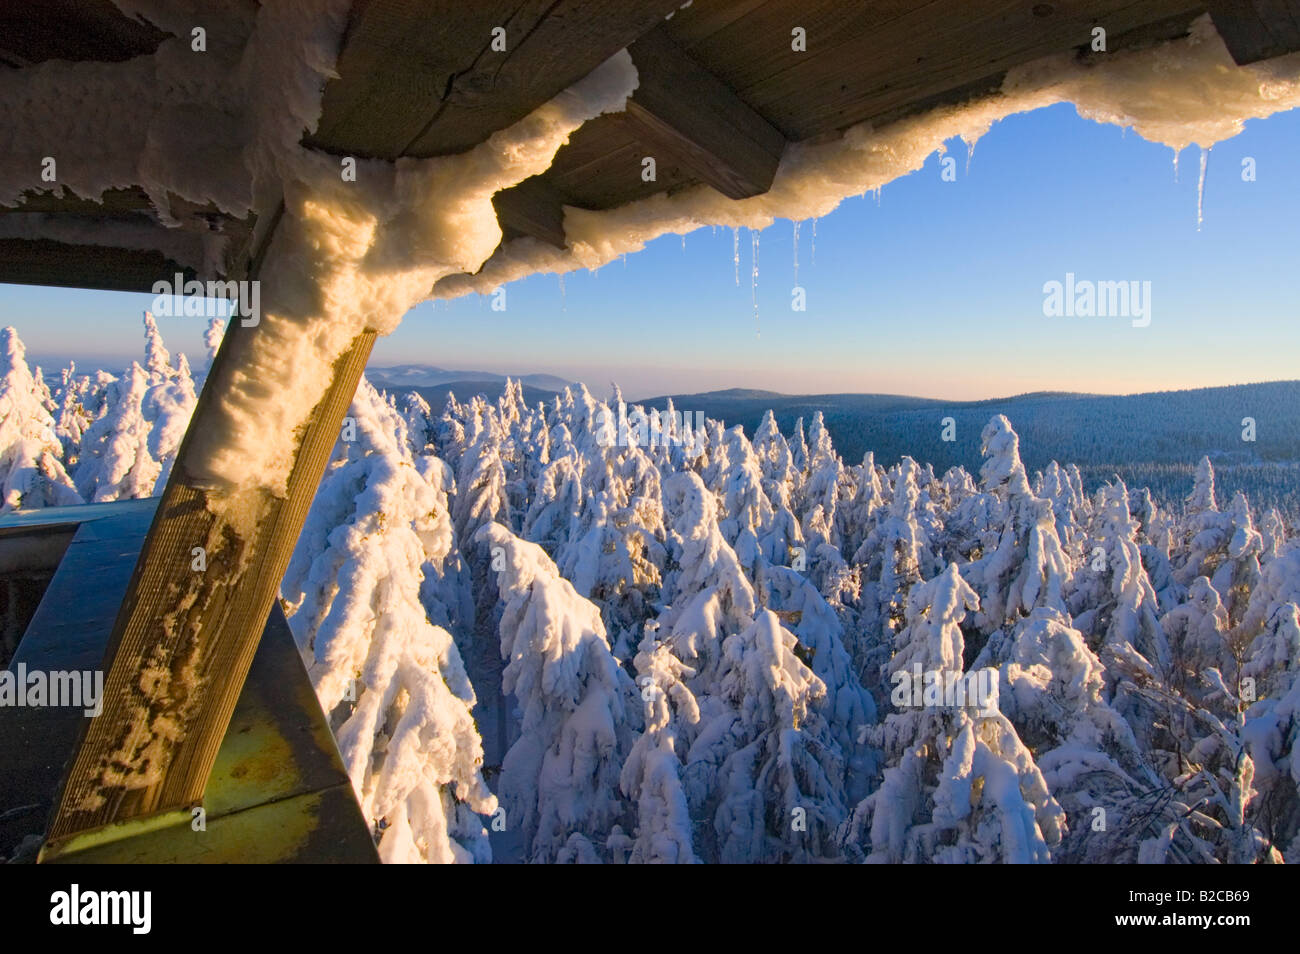 Inverno nella foresta bavarese Europa Germania coperta di neve abeti rossi frost frosty nella regione denominata Geisskopf Bayerischer Wald Foto Stock